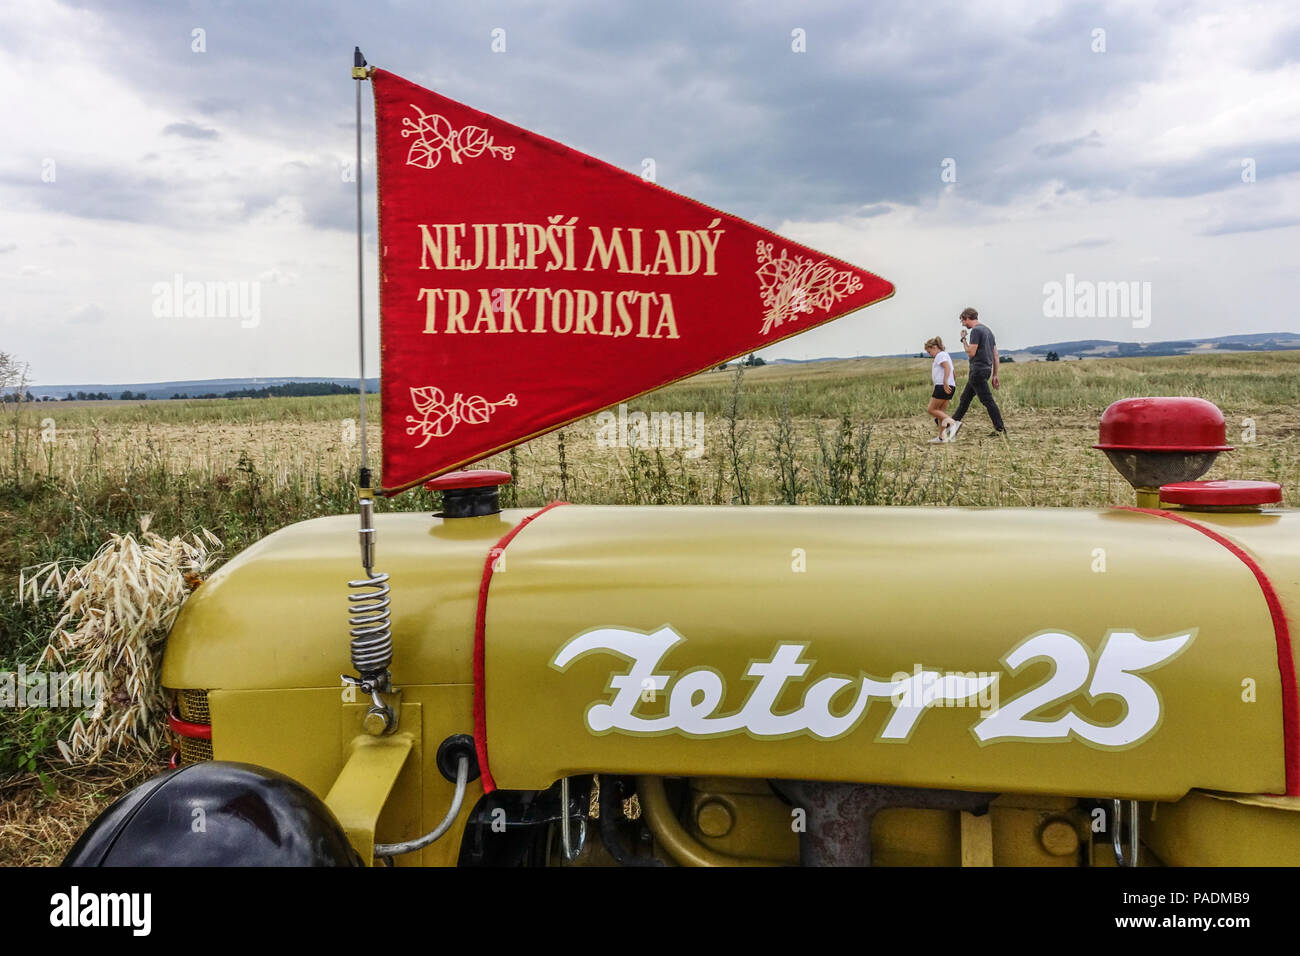 Le tracteur Zetor 25 et le drapeau ont été récompensés pour le meilleur jeune chauffeur de tracteur du tracteur socialiste Zetor de la République tchèque 1950s Banque D'Images